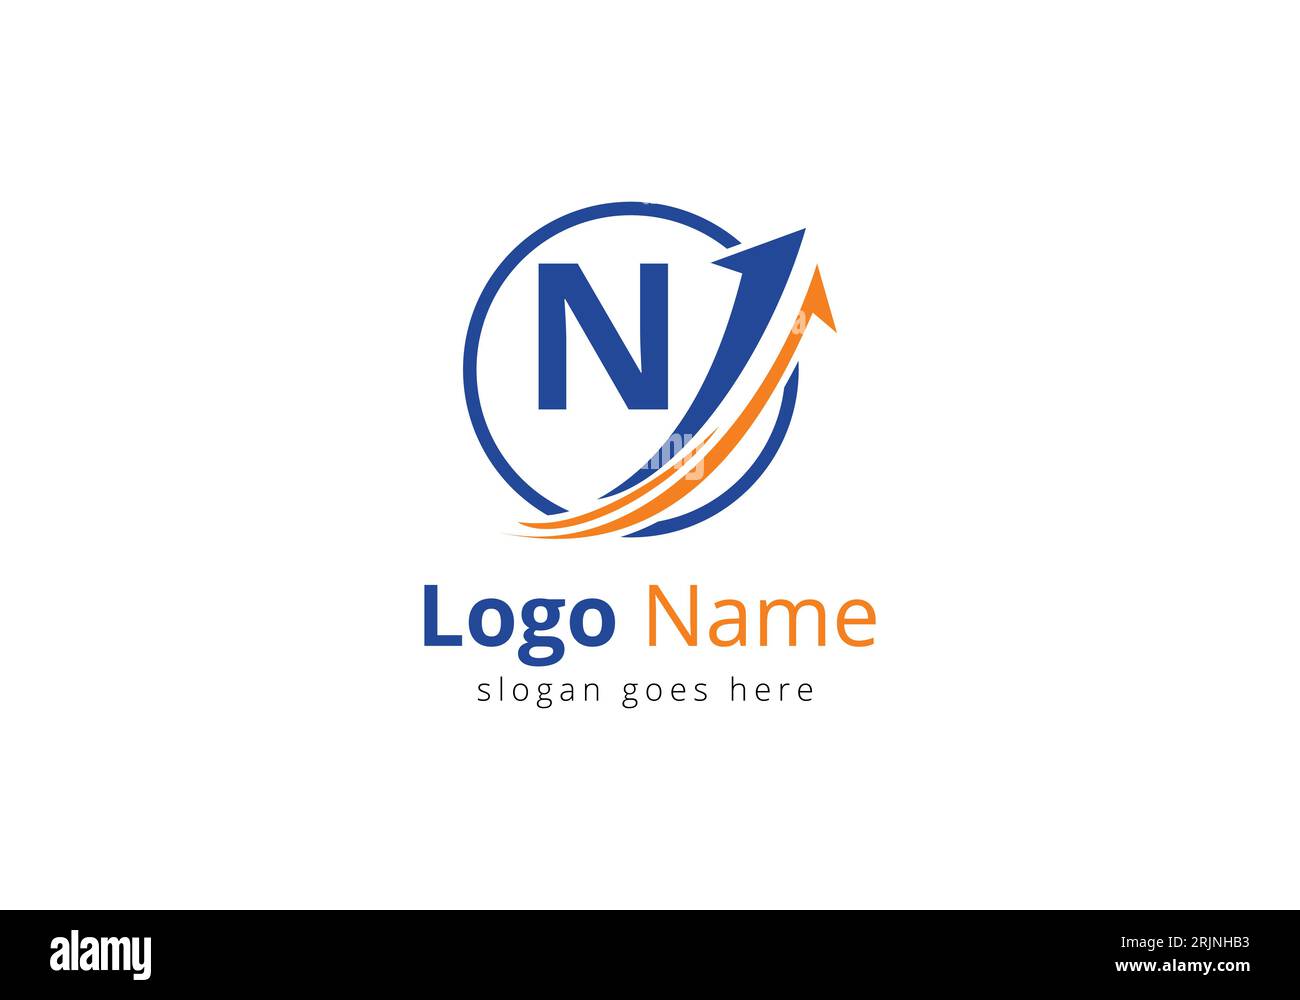 Logo de financement avec lettre N. Concept de logo financier ou de réussite. Logo pour l'entreprise comptable et l'identité de l'entreprise Illustration de Vecteur